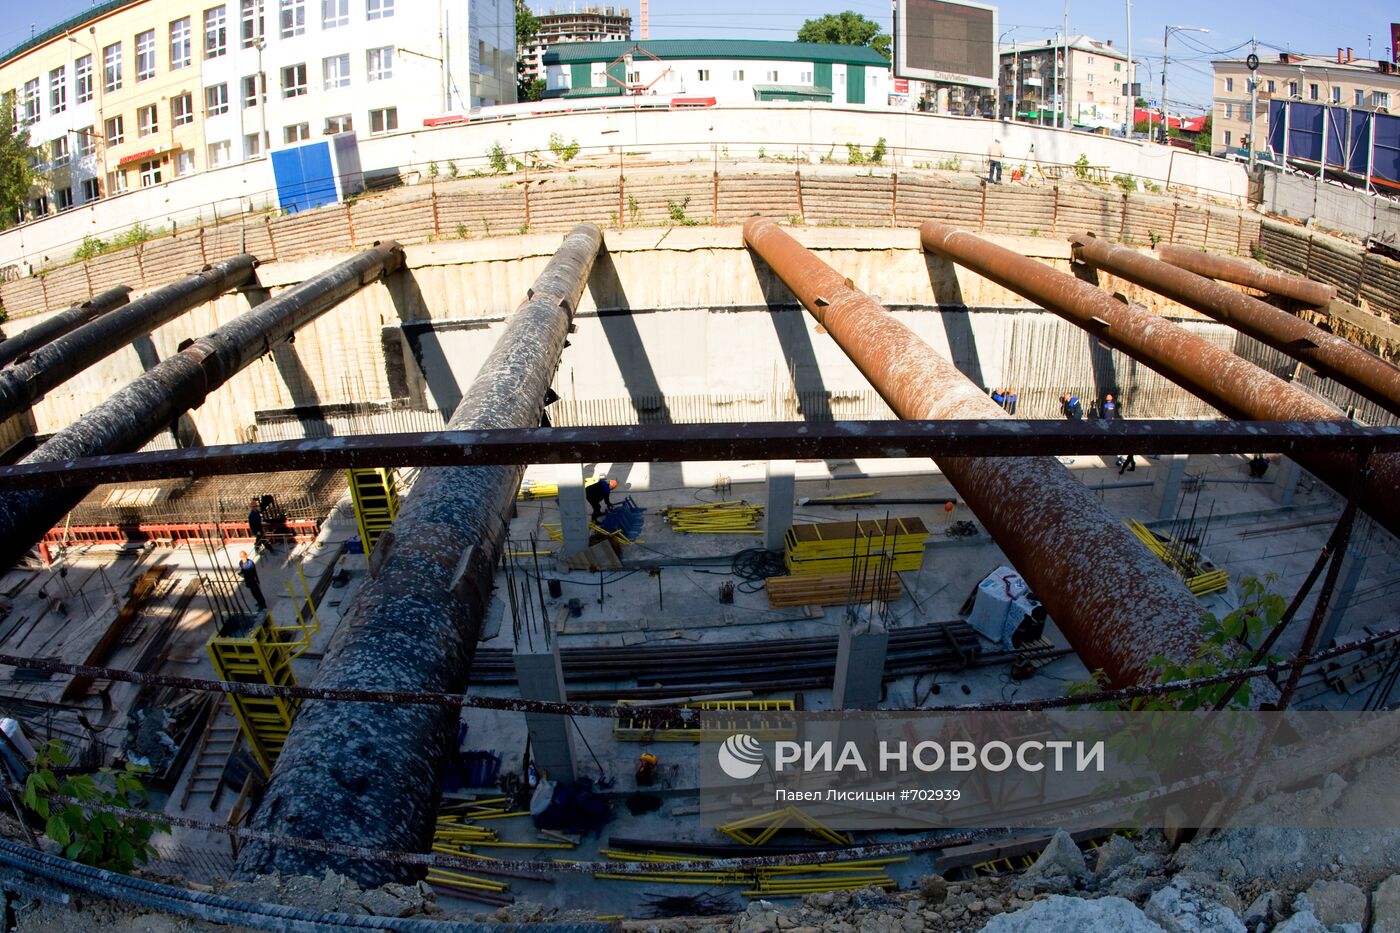 Строительство станции метро "Чкаловская" в Екатеринбурге